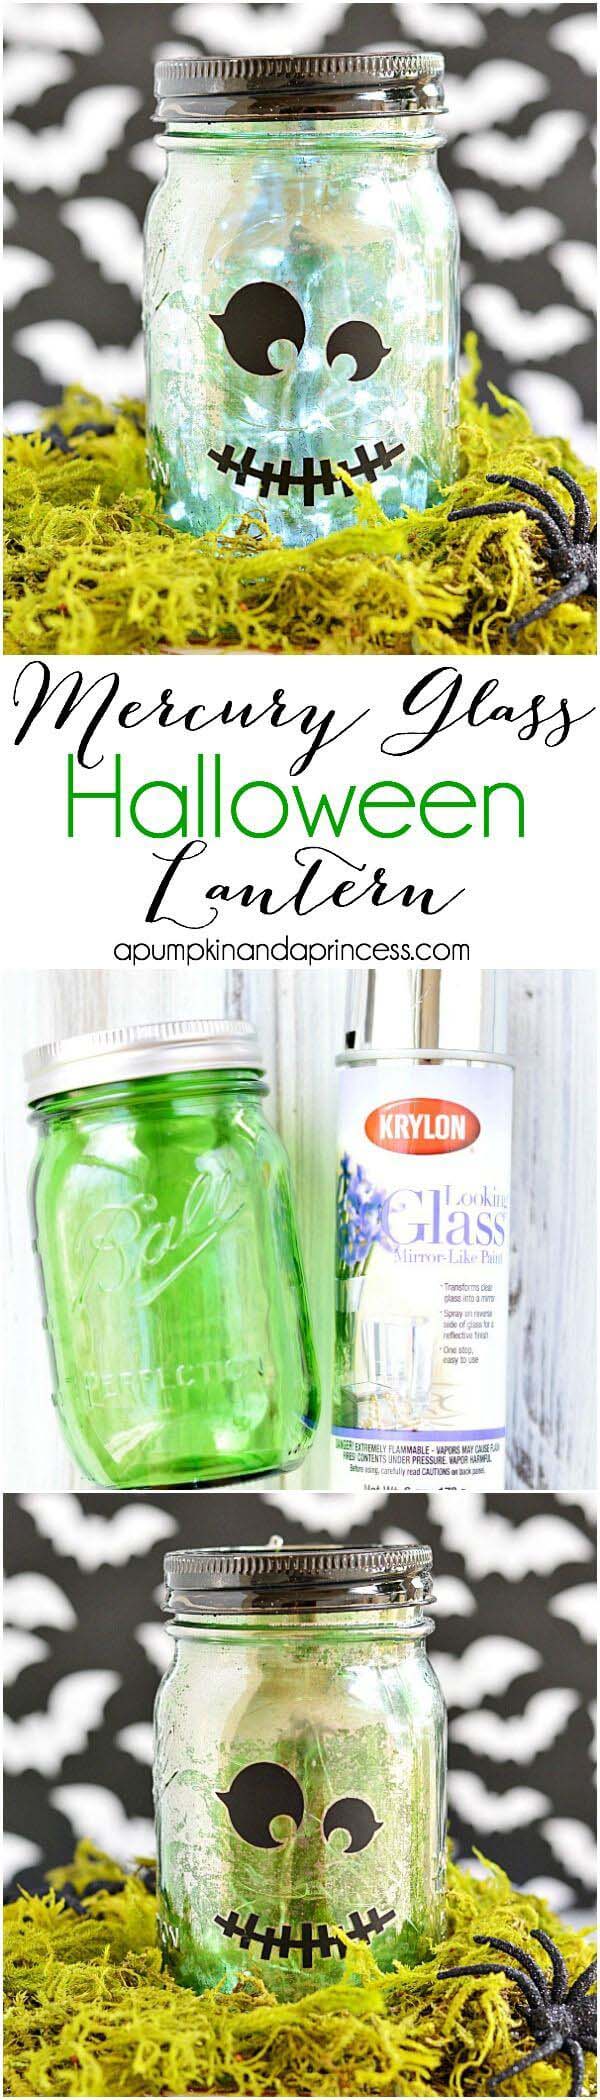 30. Mercury Glass Frankenstein Lantern #halloween #masonjar #crafts #decorhomeideas